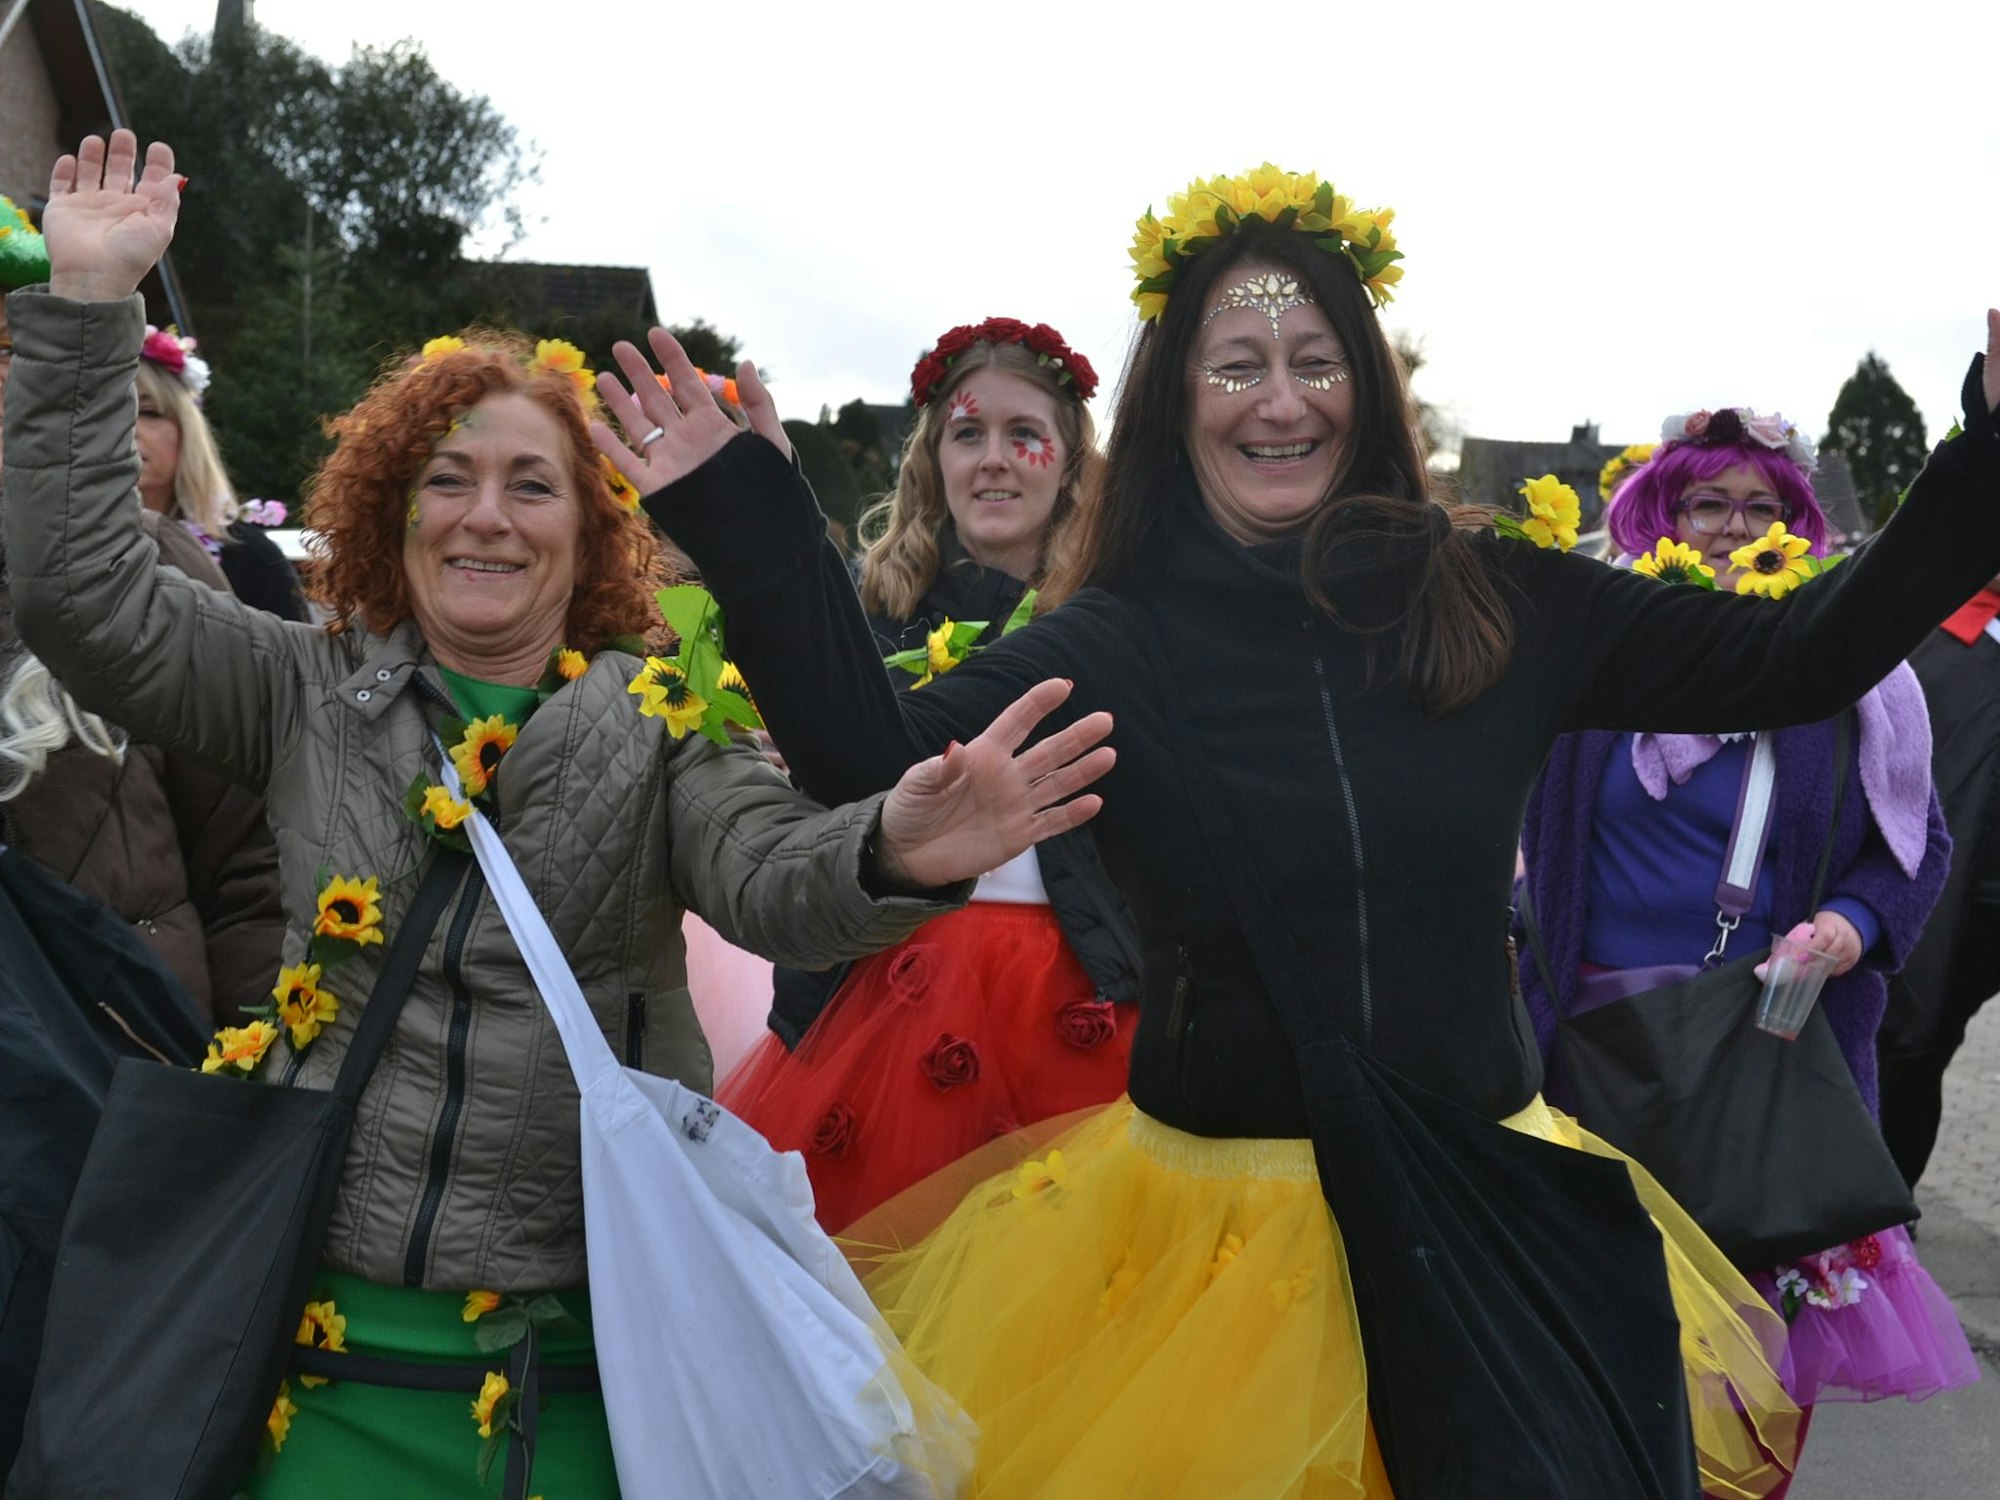 Singend und tanzend begleiteten die Schwerfener am Sonntag ihren Karnevalszug.